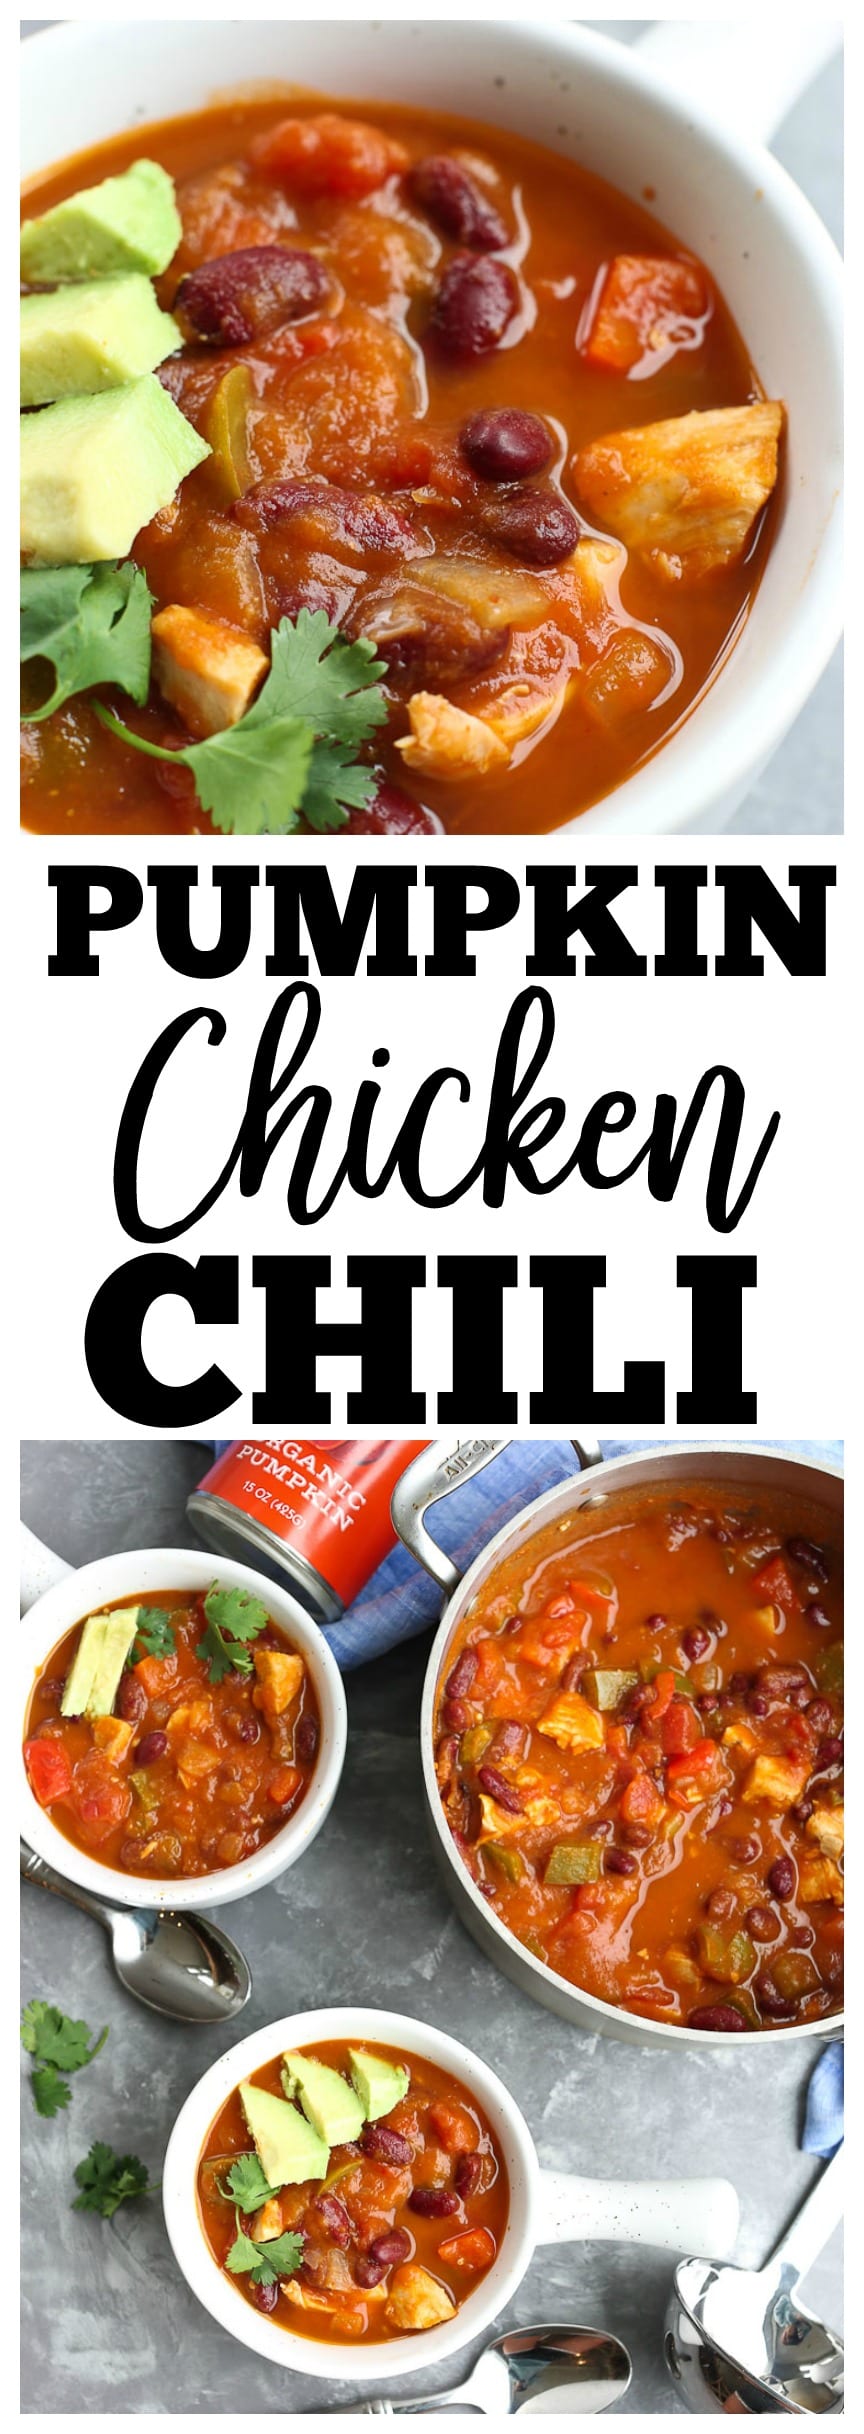 Pumpkin Chicken Chili Recipe. Dairy-free, gluten-free recipe, easy quick weeknight dinner